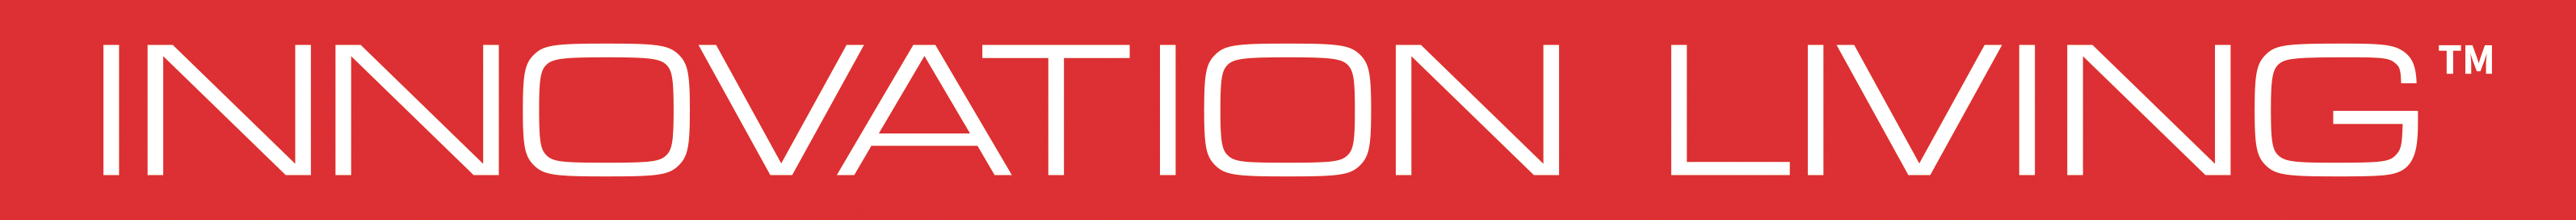 innovationliving-logo